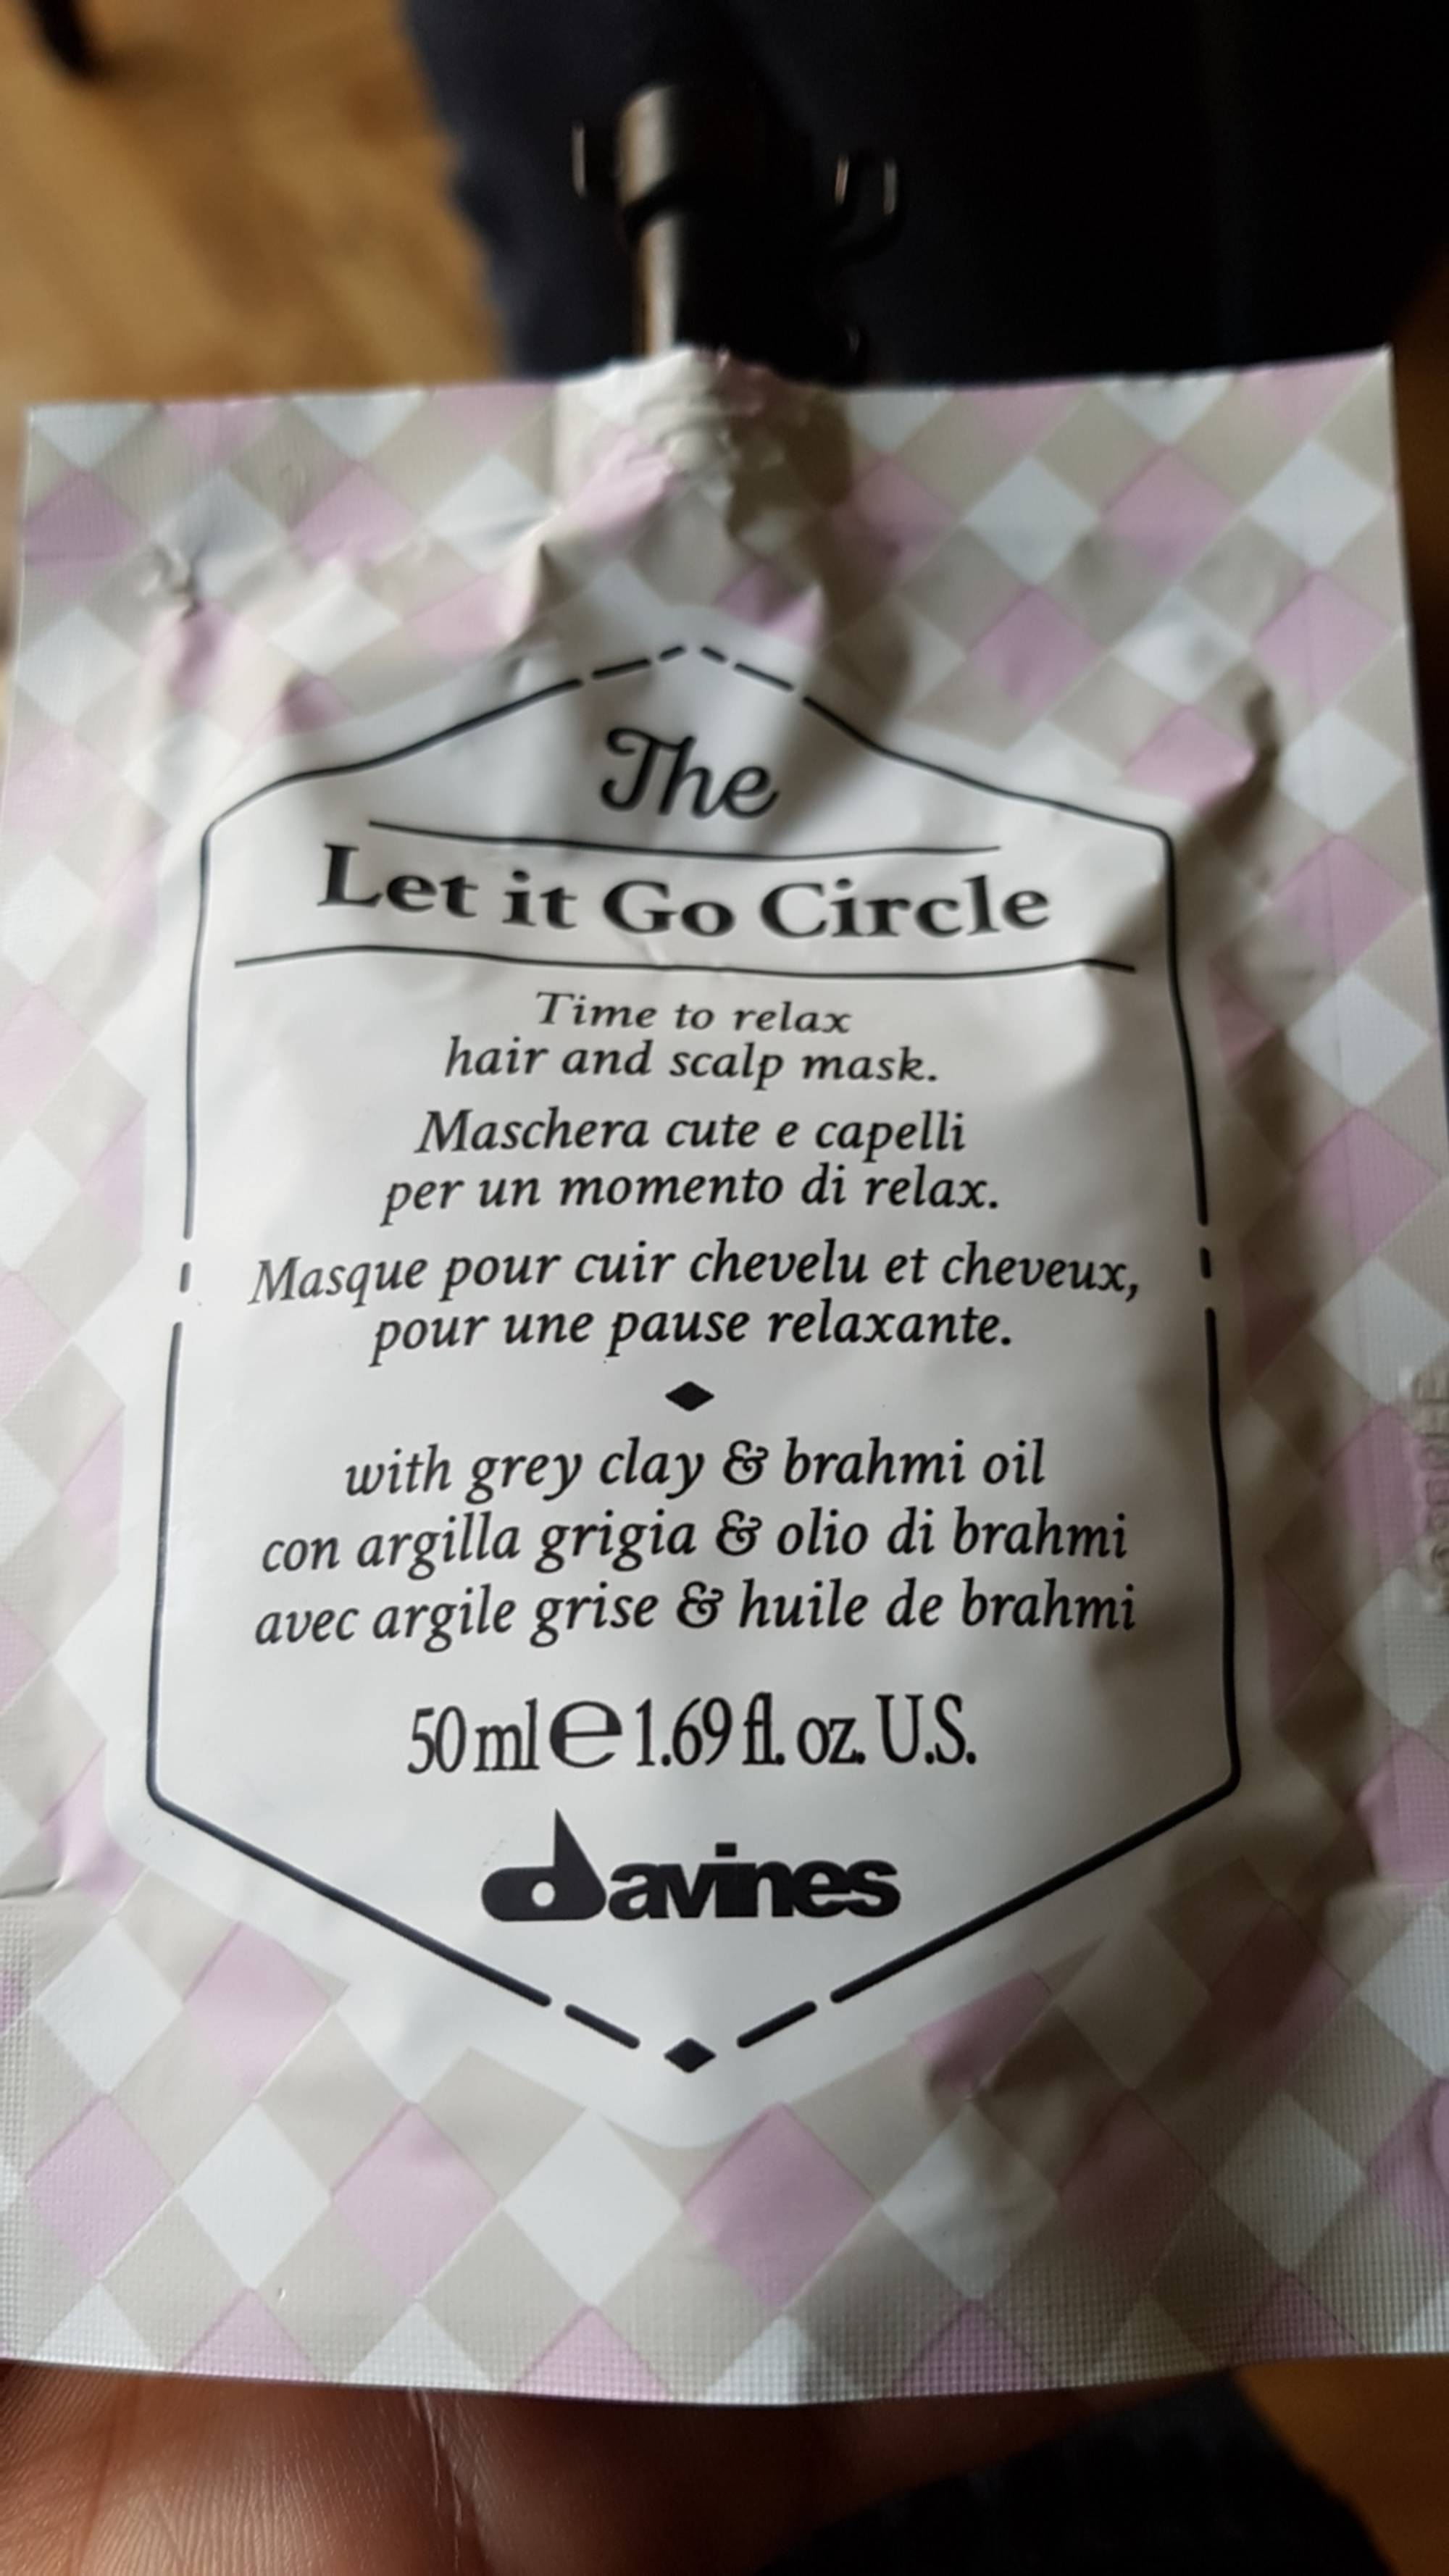 DAVINES - The let it go circle - Masque pour cuir chevelu et cheveux